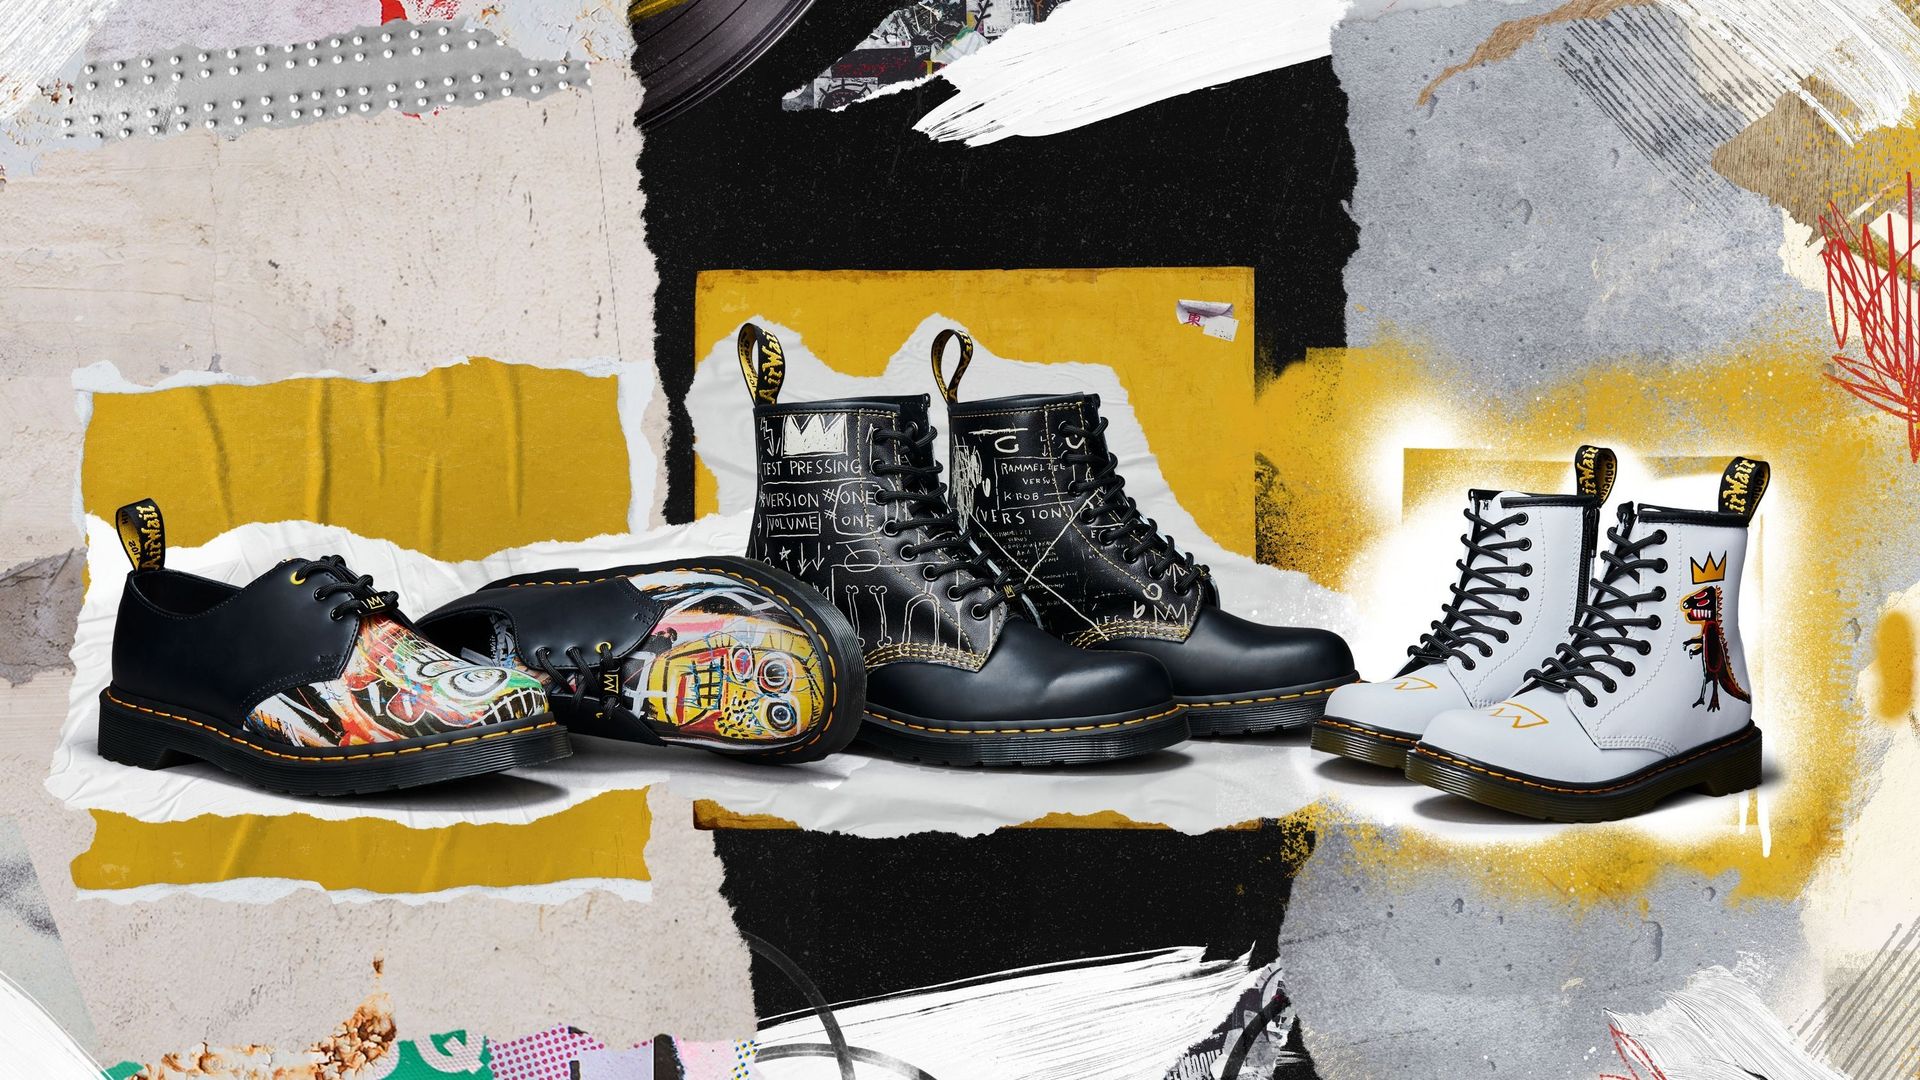 Dr. Martens rend hommage à Jean-Michel Basquiat avec une collection de chaussures à l'effigie de certaines de ses œuvres.